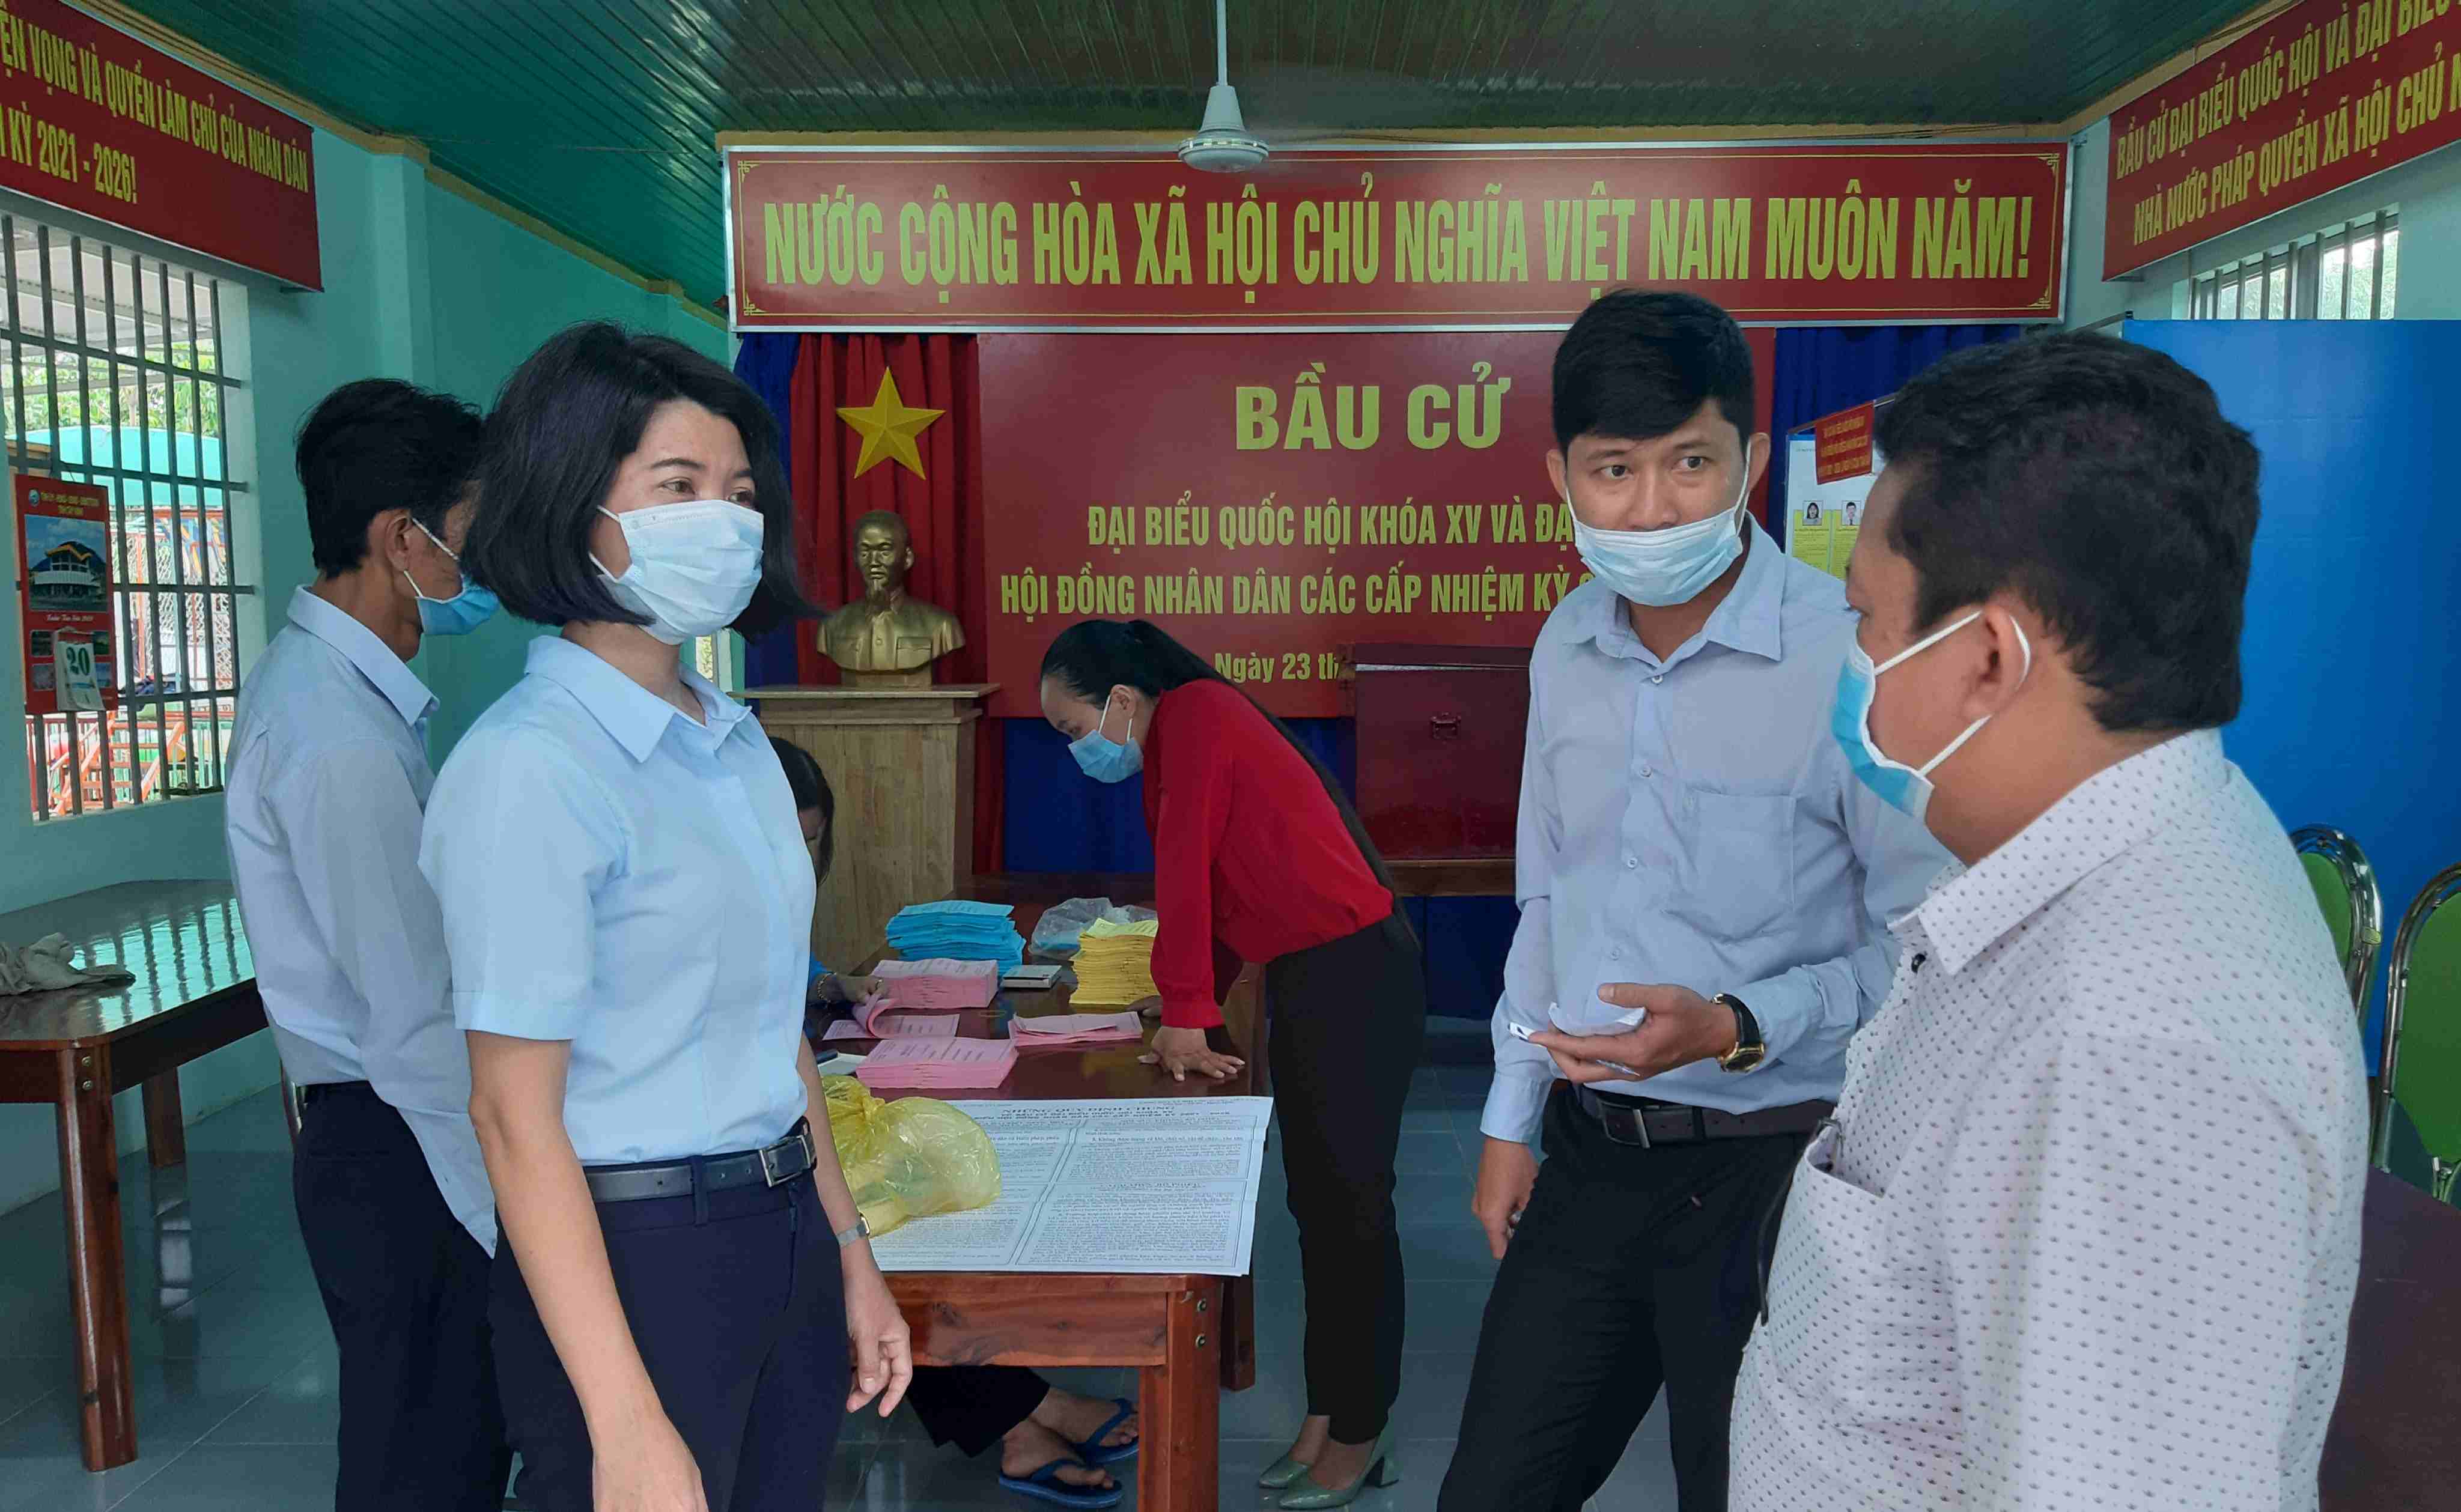 Ủy ban Bầu cử Huyện Dương Minh Châu: Kiểm tra, giám sát công tác chuẩn bị bầu cử trên địa bàn xã Phan, thị trấn DMC và xã Suối Đá